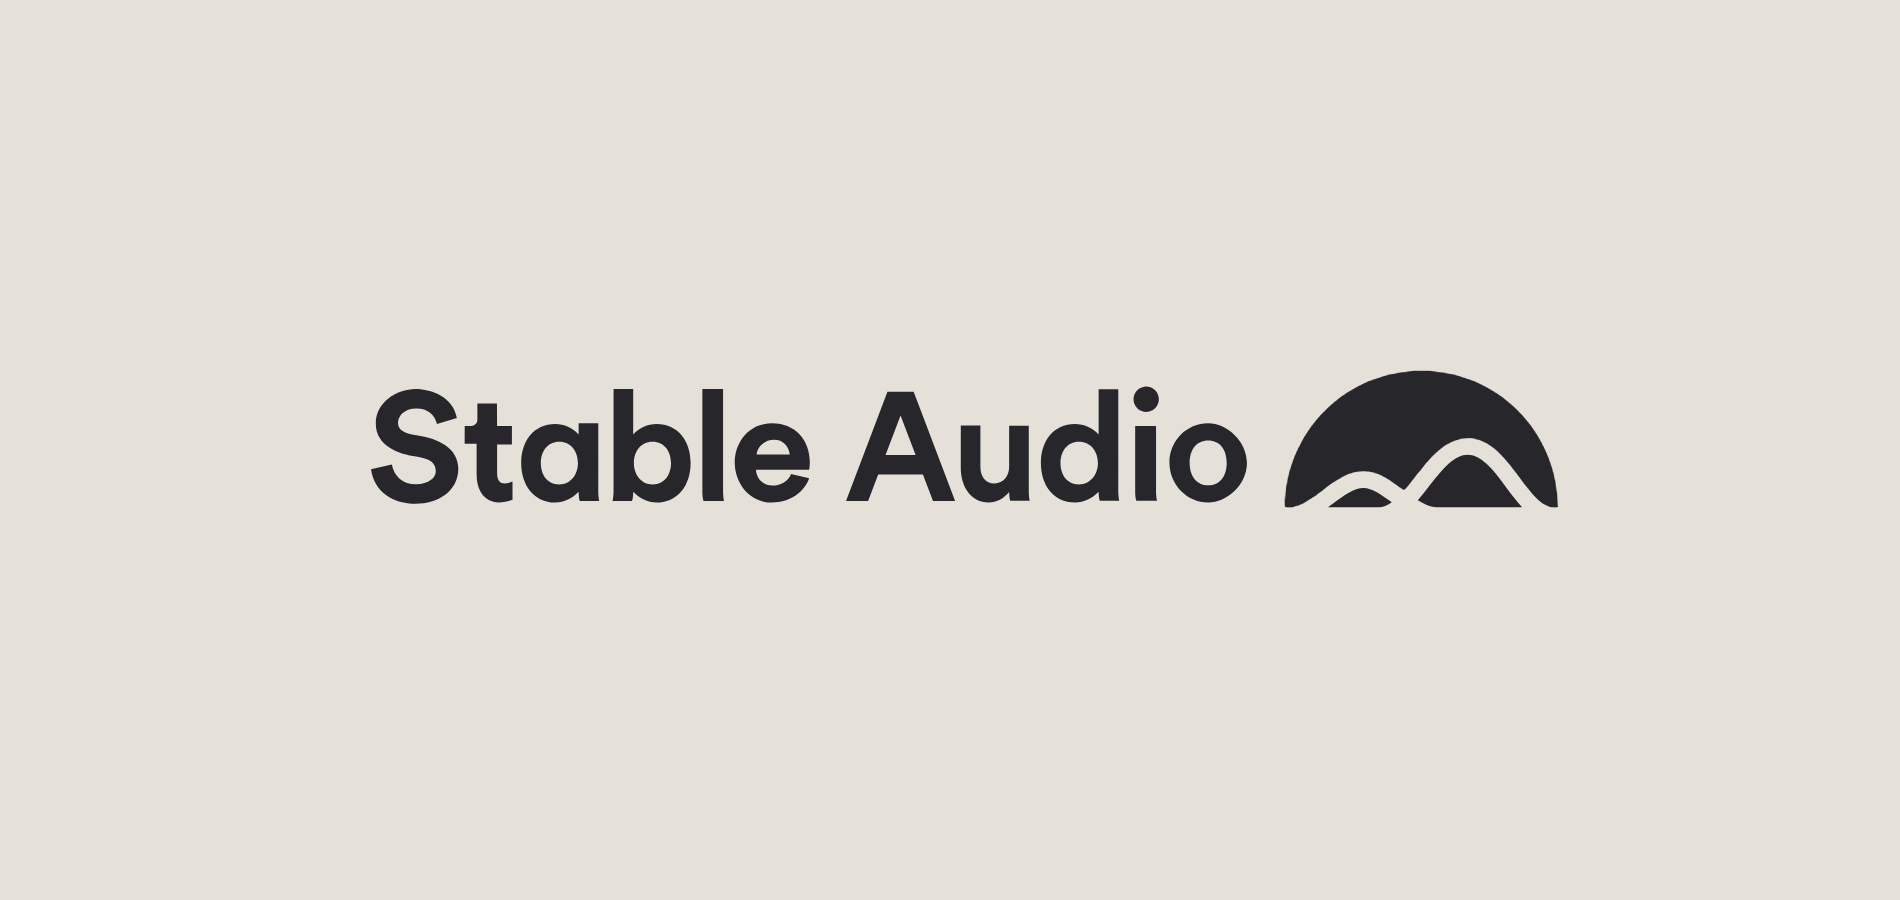 Stability AI запустила нейронку Stable Audio: она пишет музыку по текстовому описанию